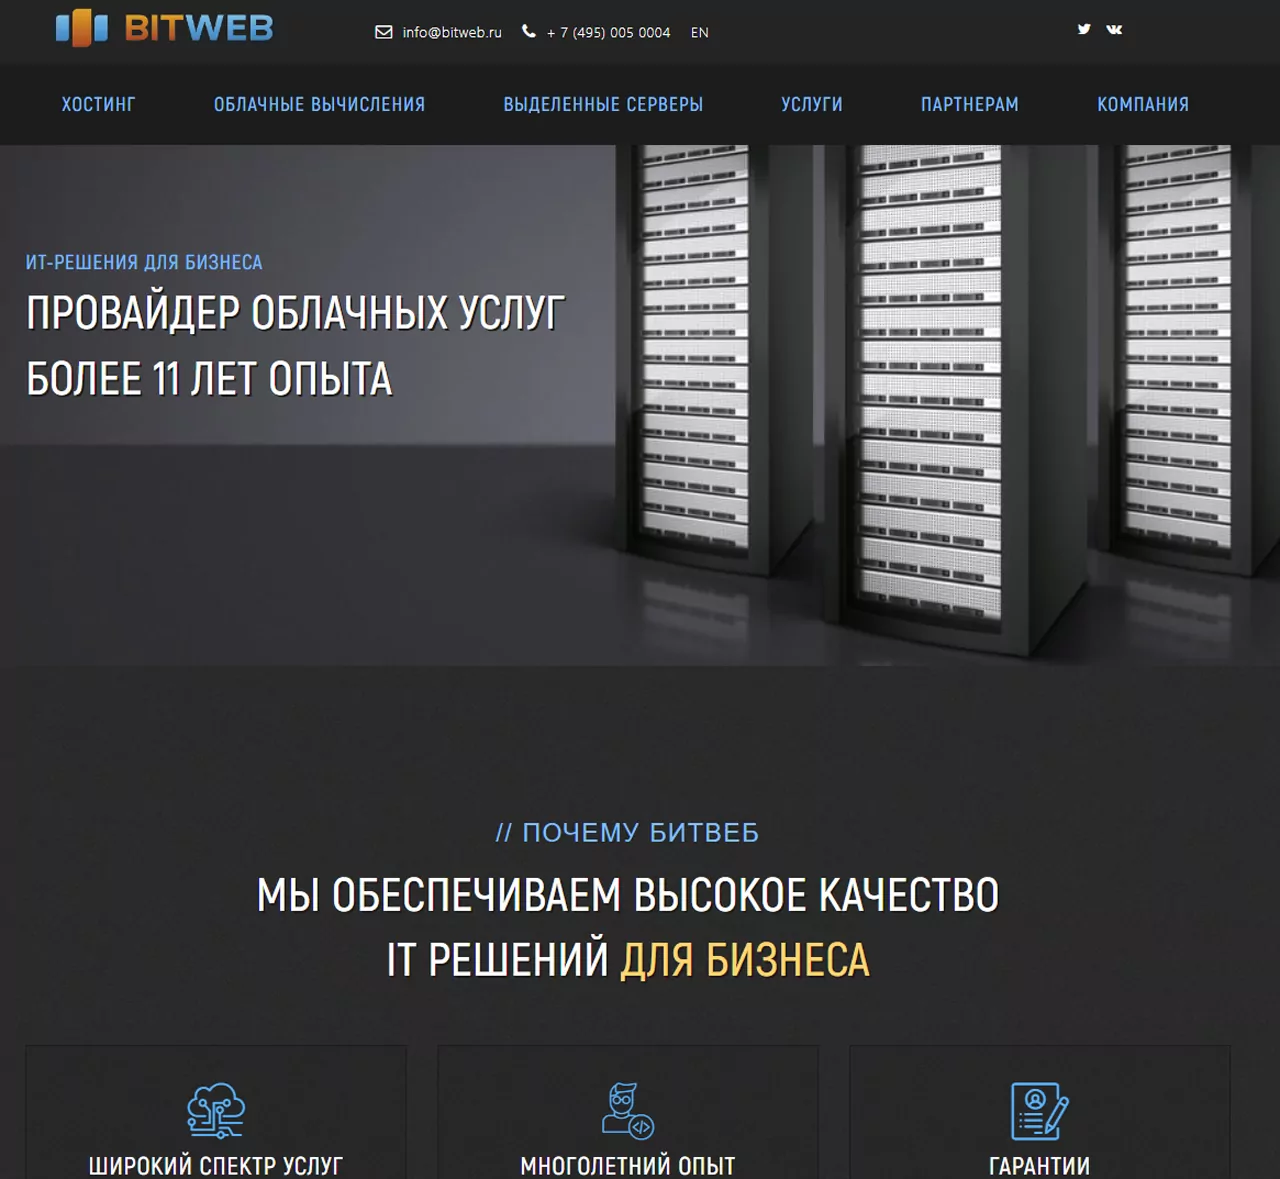 Bitweb.ru – полный обзор хостинга